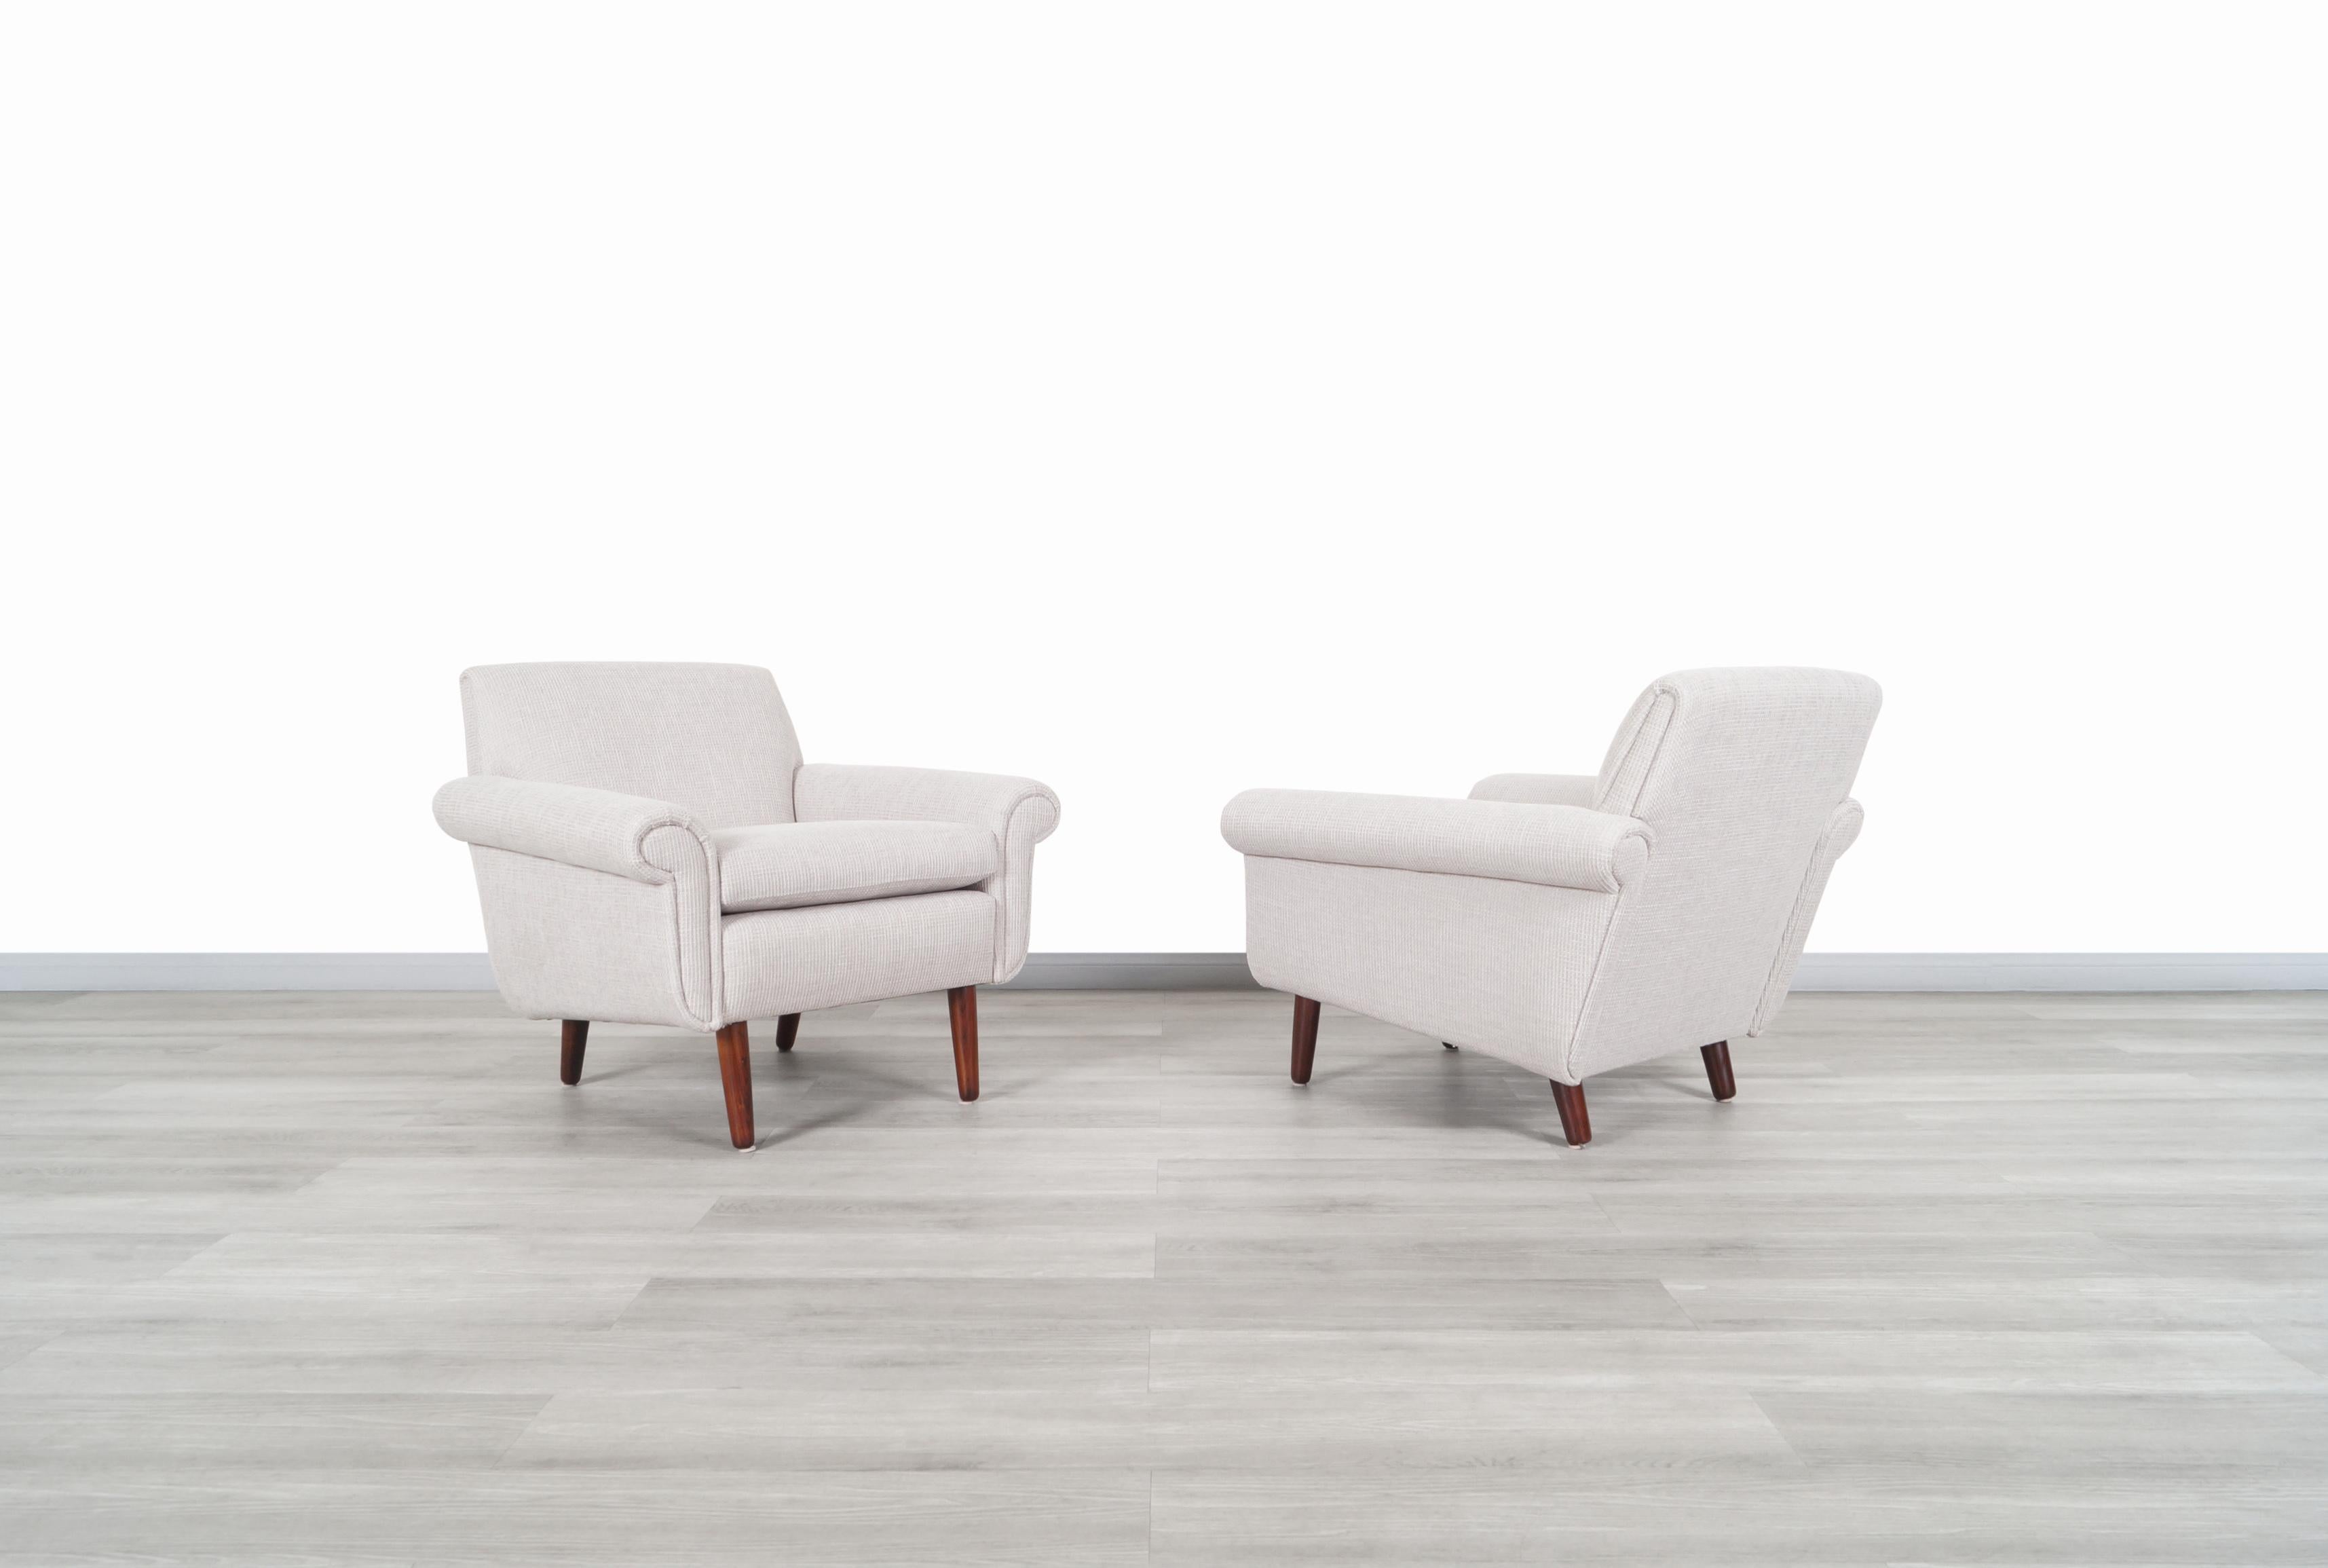 Außergewöhnliche moderne dänische Lounge-Stühle aus Palisanderholz, hergestellt in Dänemark, um 1960er Jahre. Diese Stühle haben ein elegantes und klares Design. Sie wurden von unserem Expertenteam professionell neu gepolstert. Jeder Stuhl ist mit